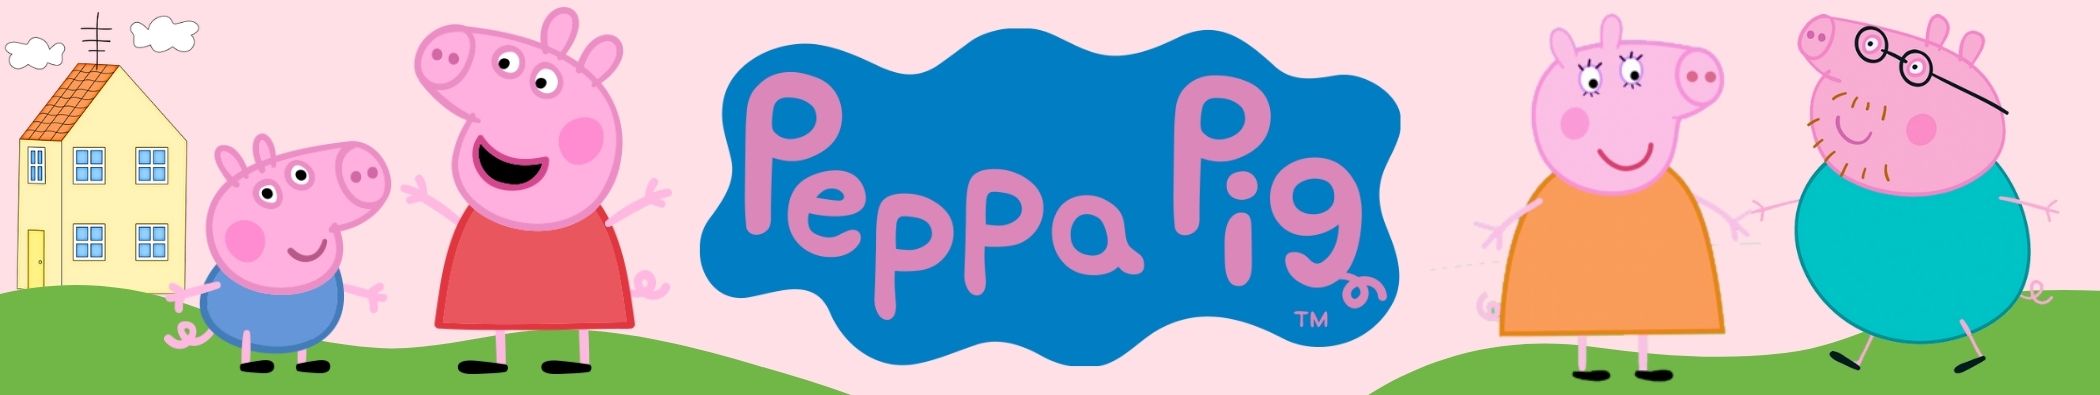 Jocs de taula Peppa Pig